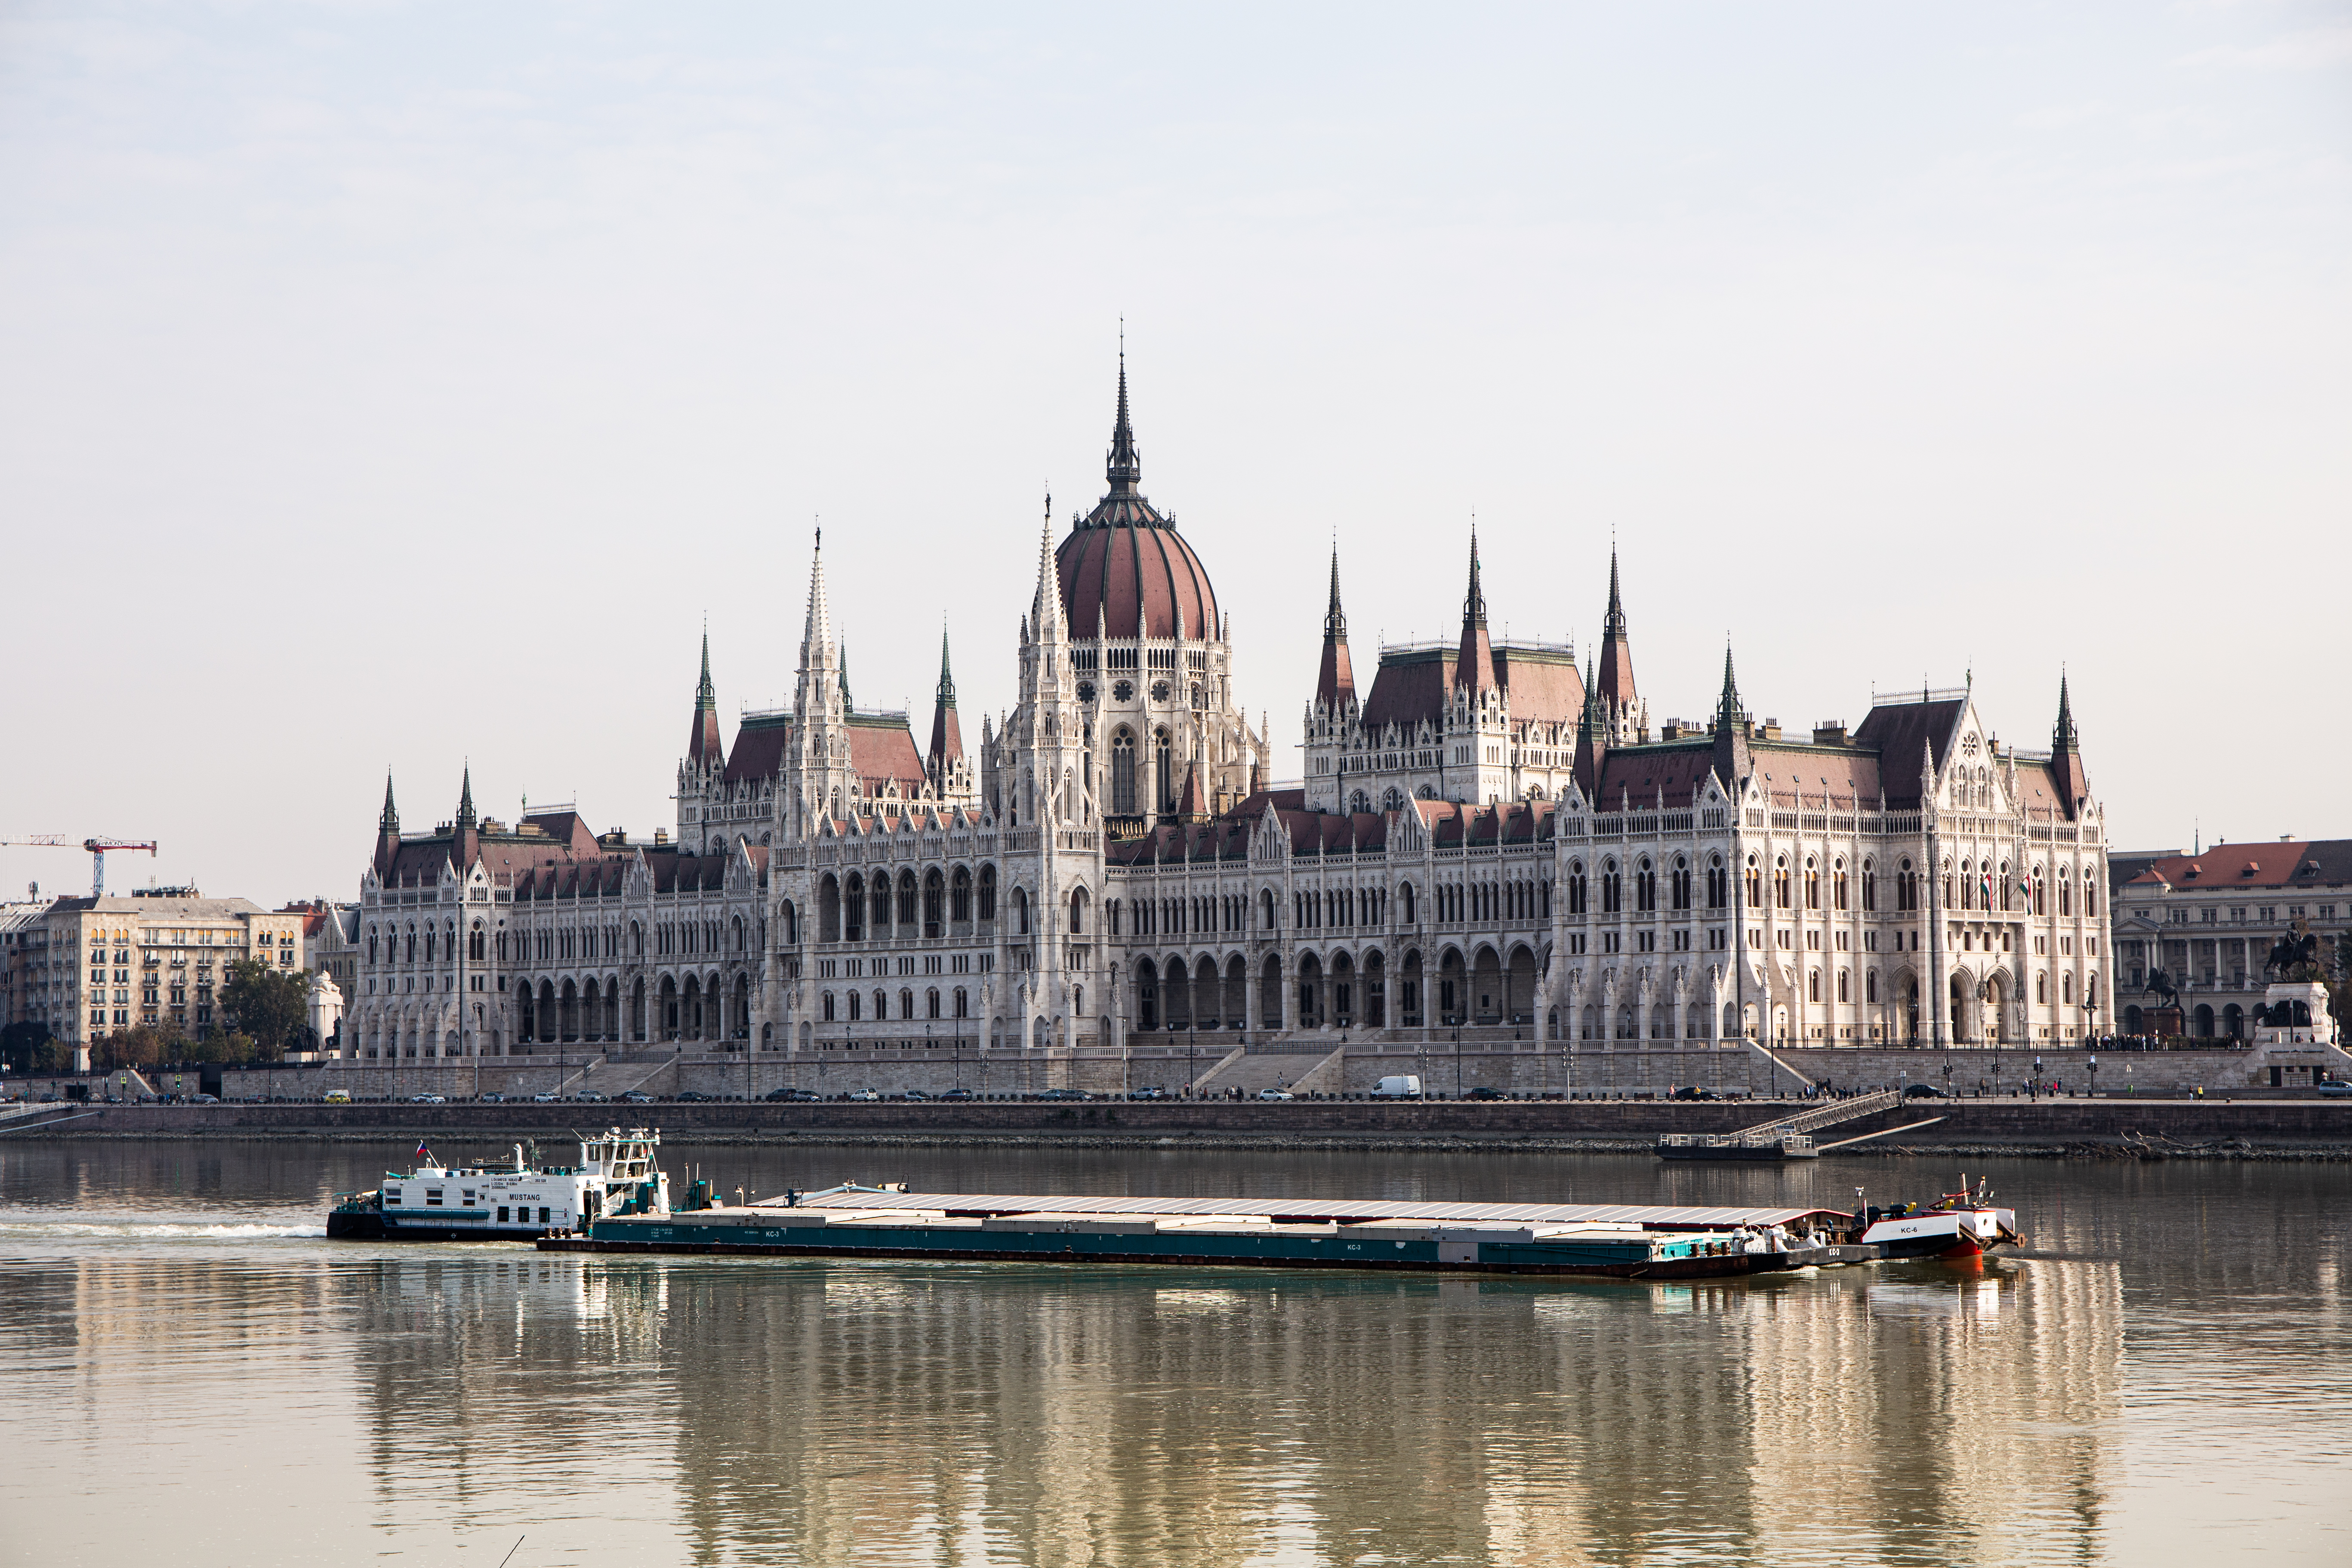 Unkarin Parlamenttitalo on massiivinen näky, sillä se on todella iso ja yksityiskohtainen.